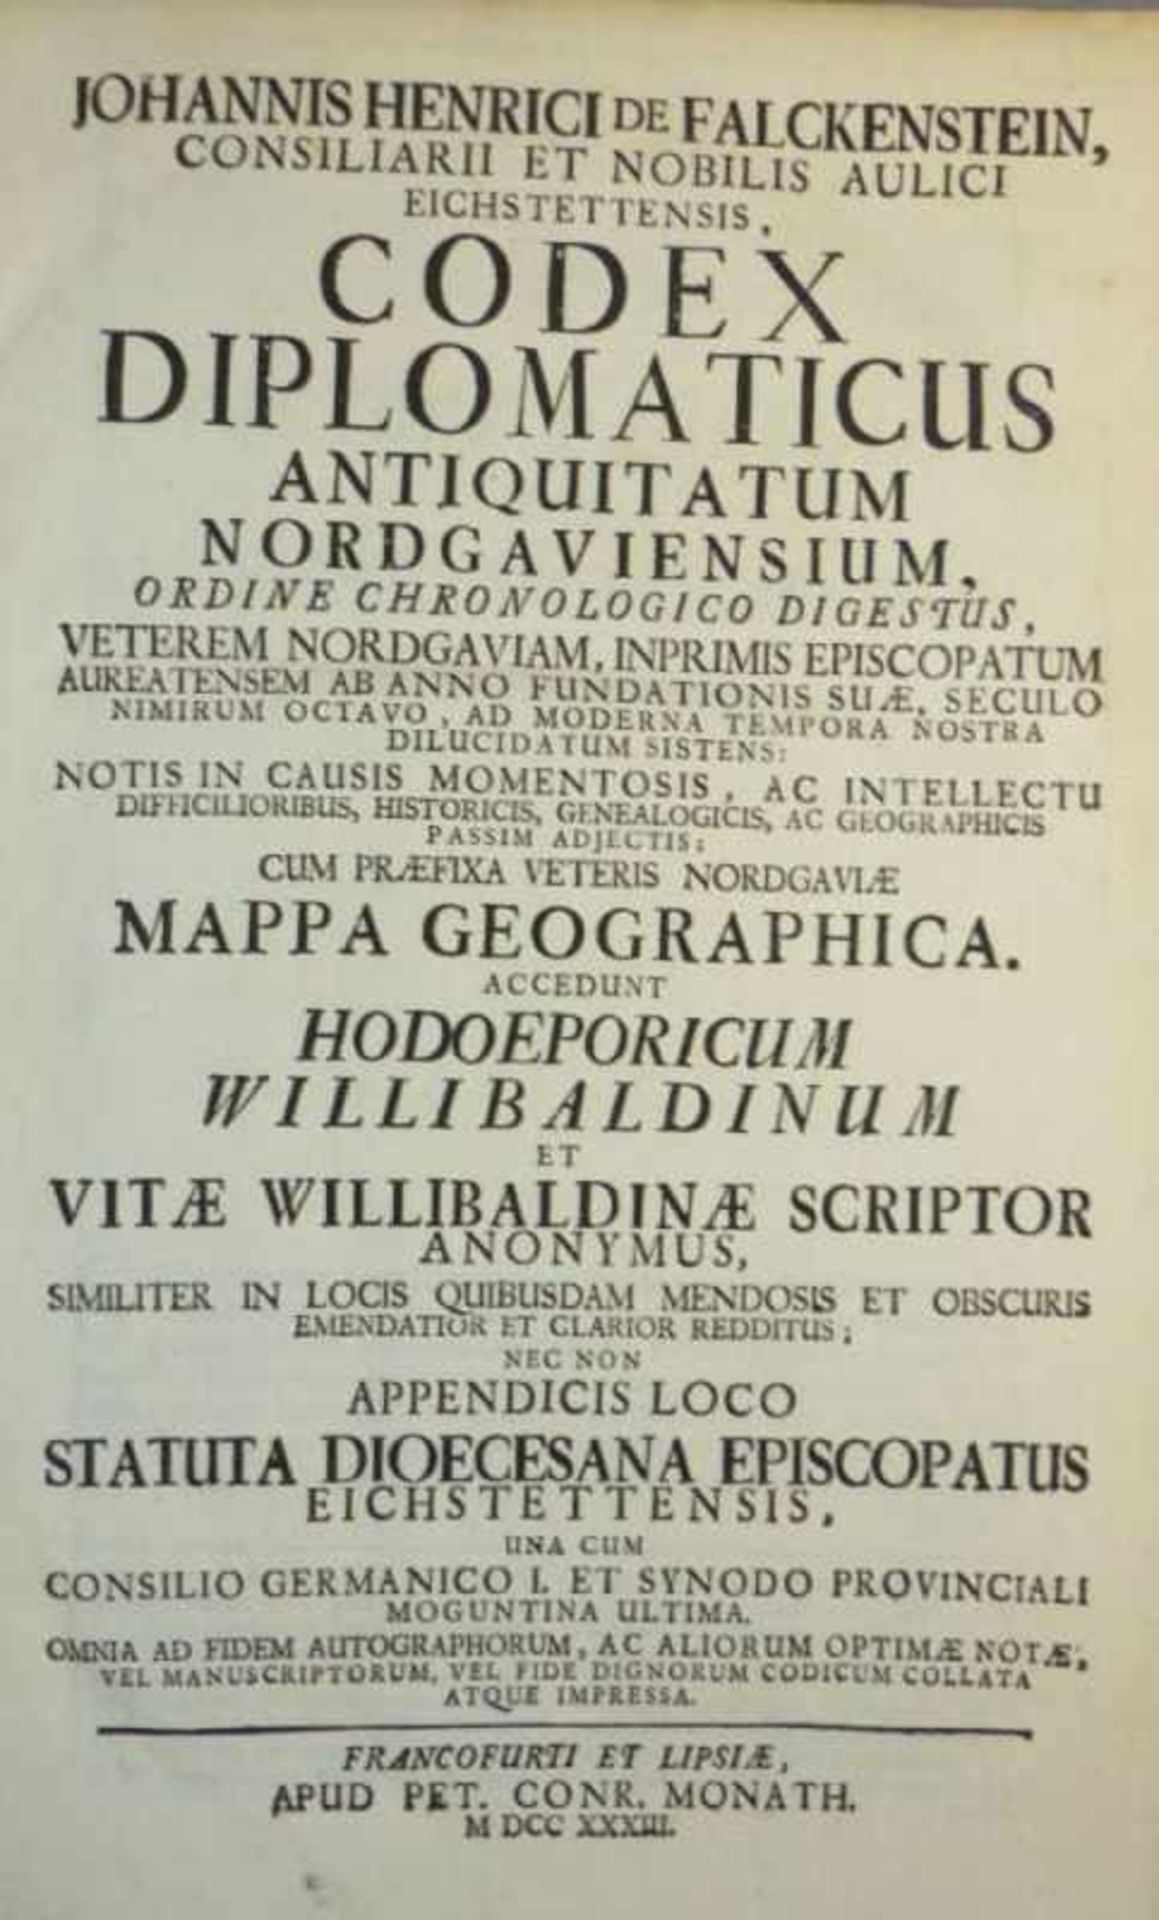 Falckenstein, Johann Heinrich Codex Diplomaticus Antiquitatum Nordgaviensium Ordine Chronologico